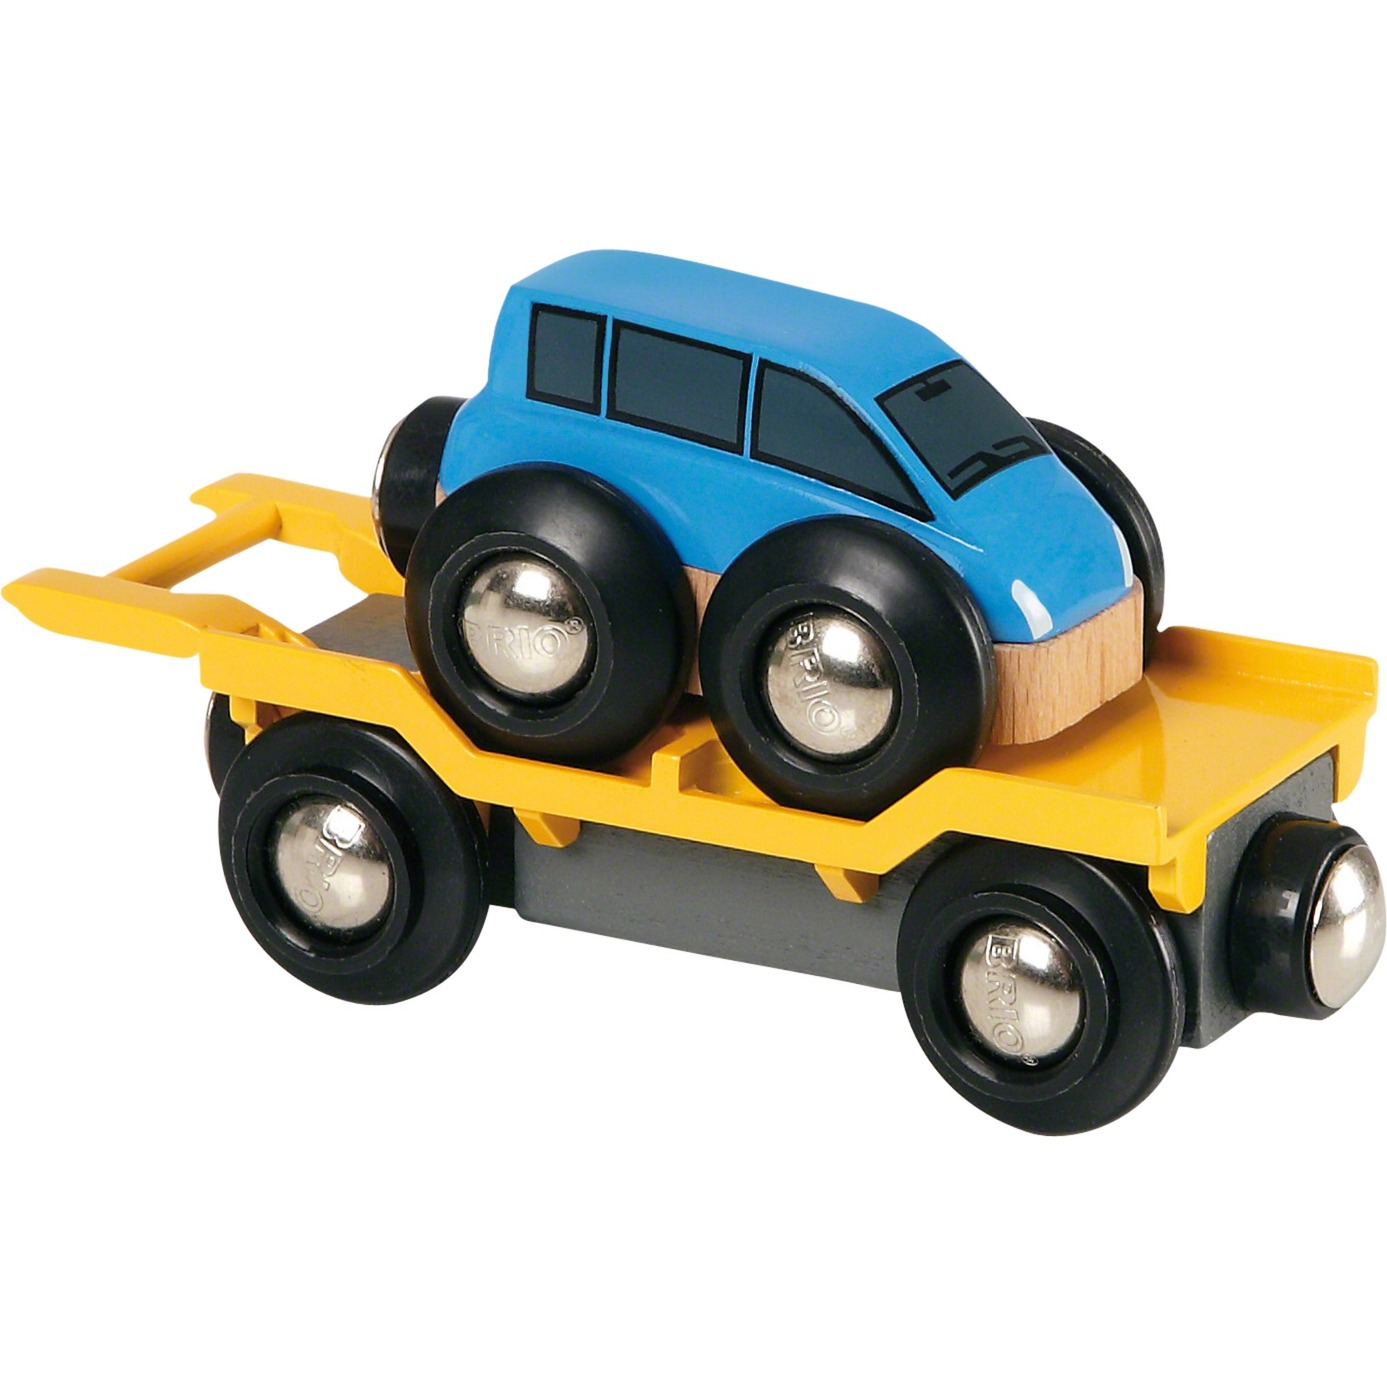 Image of Alternate - World Autotransporter mit Rampe, Spielfahrzeug online einkaufen bei Alternate